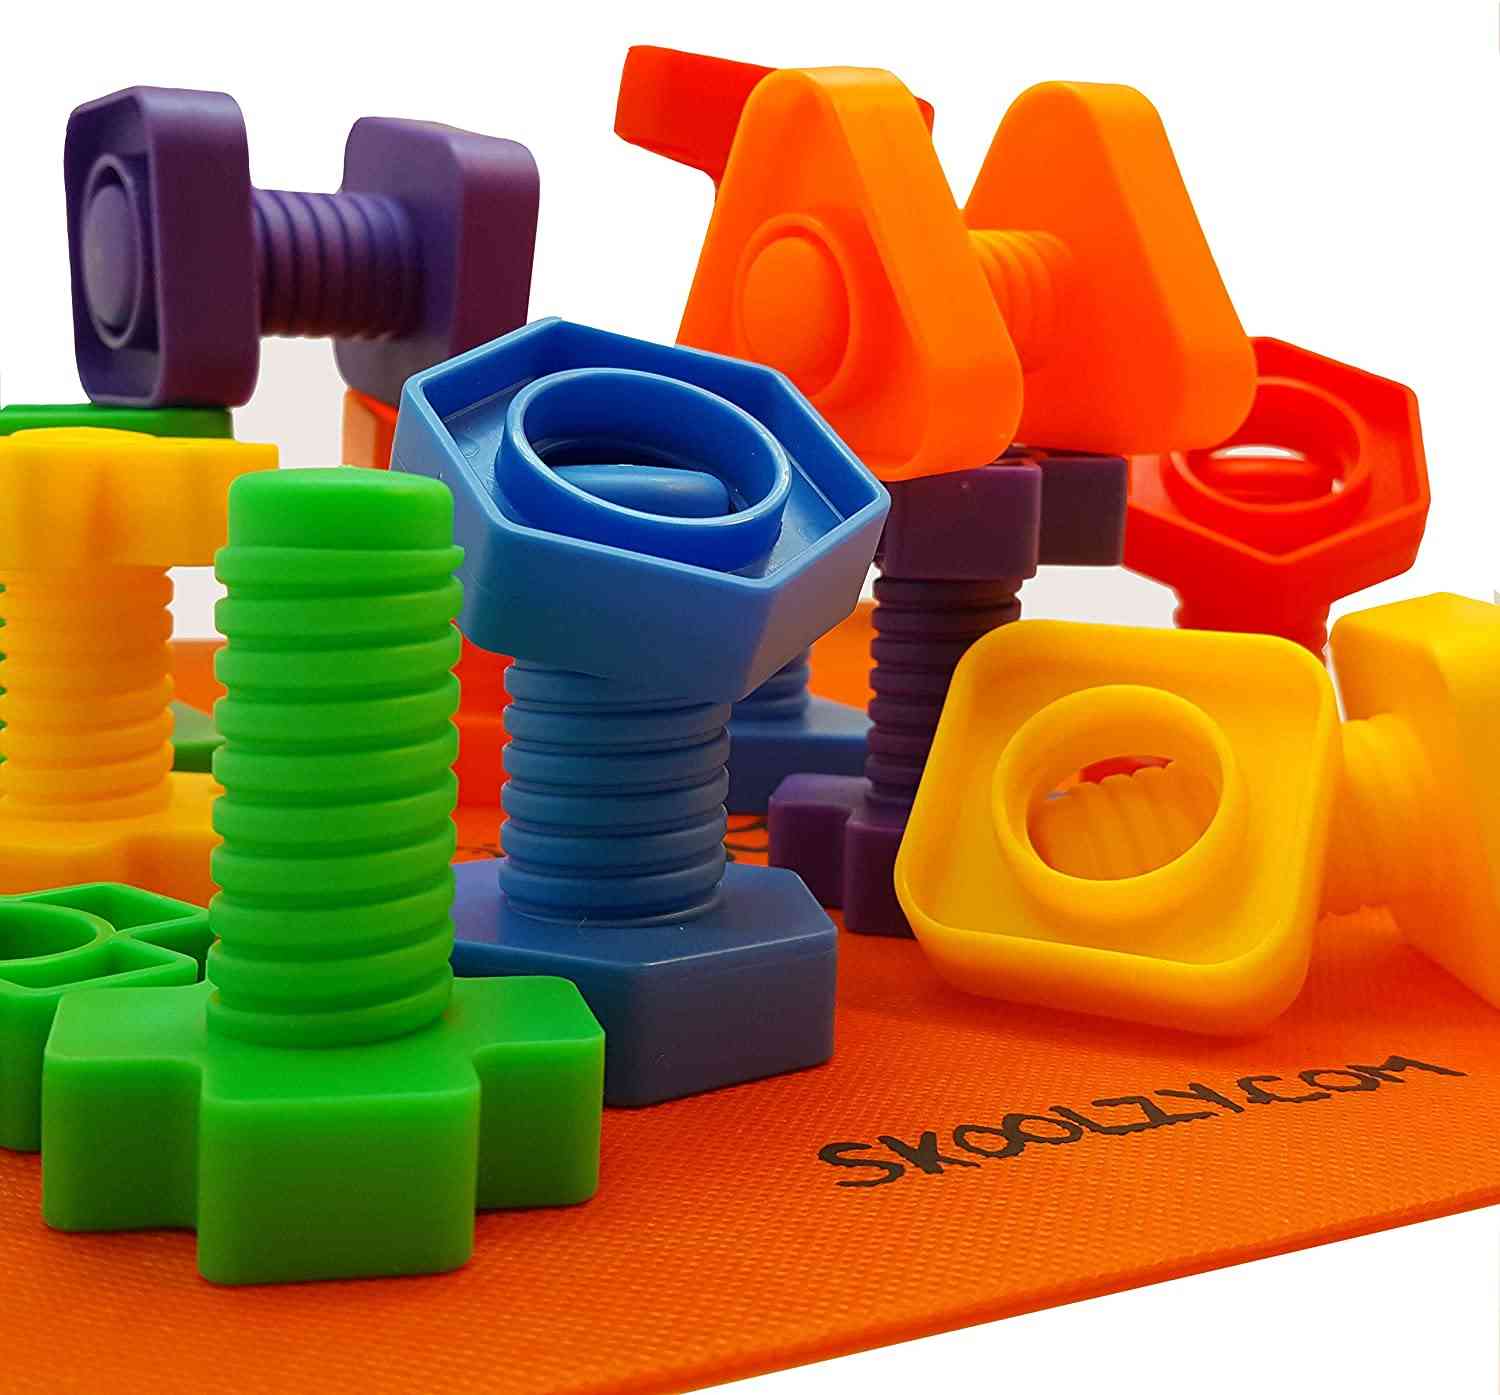 Stavebné bloky so skrutkovým dotykovým párom - hračka v tvare raného vzdelávania